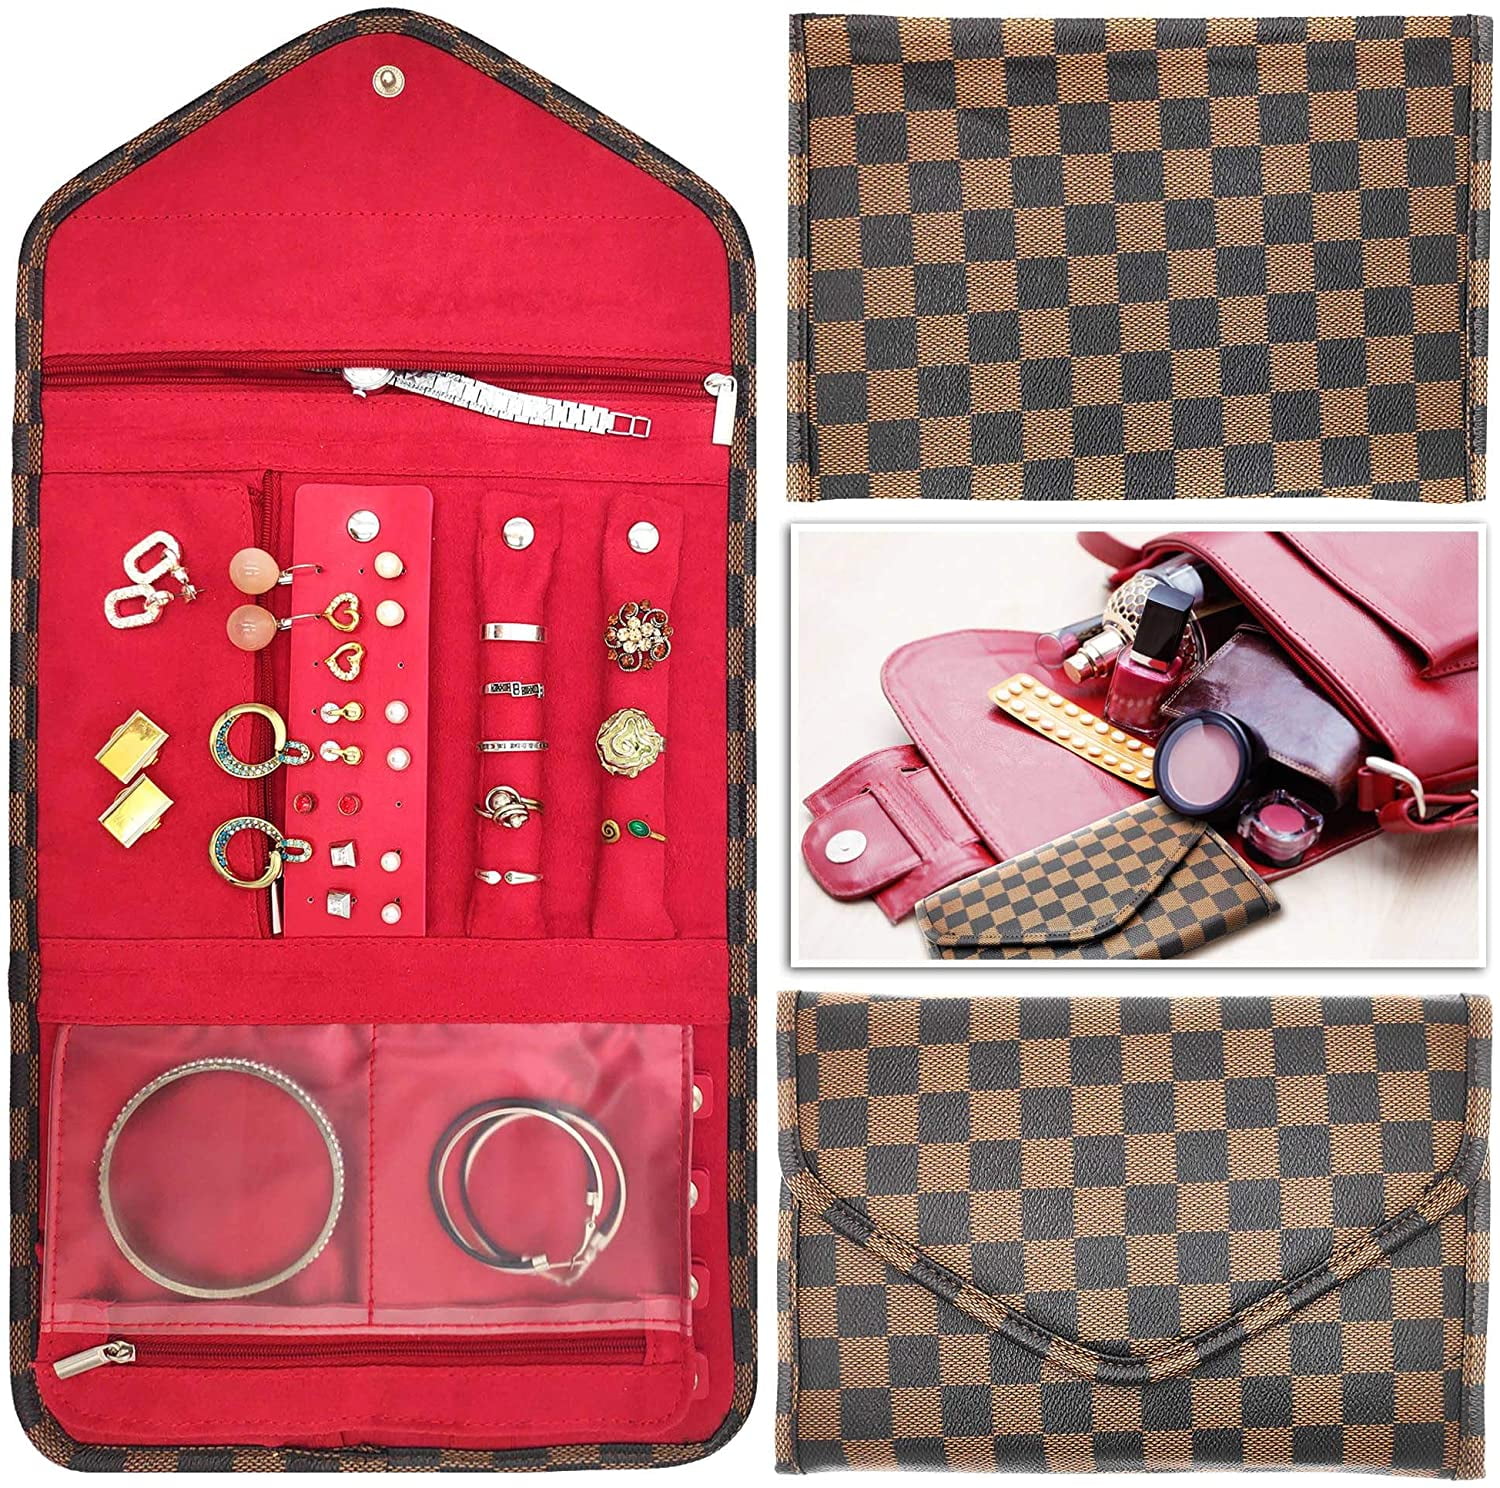 NBX Jewelry Travel Case Foldable Jewelry Organizer Storage Case, Brown 